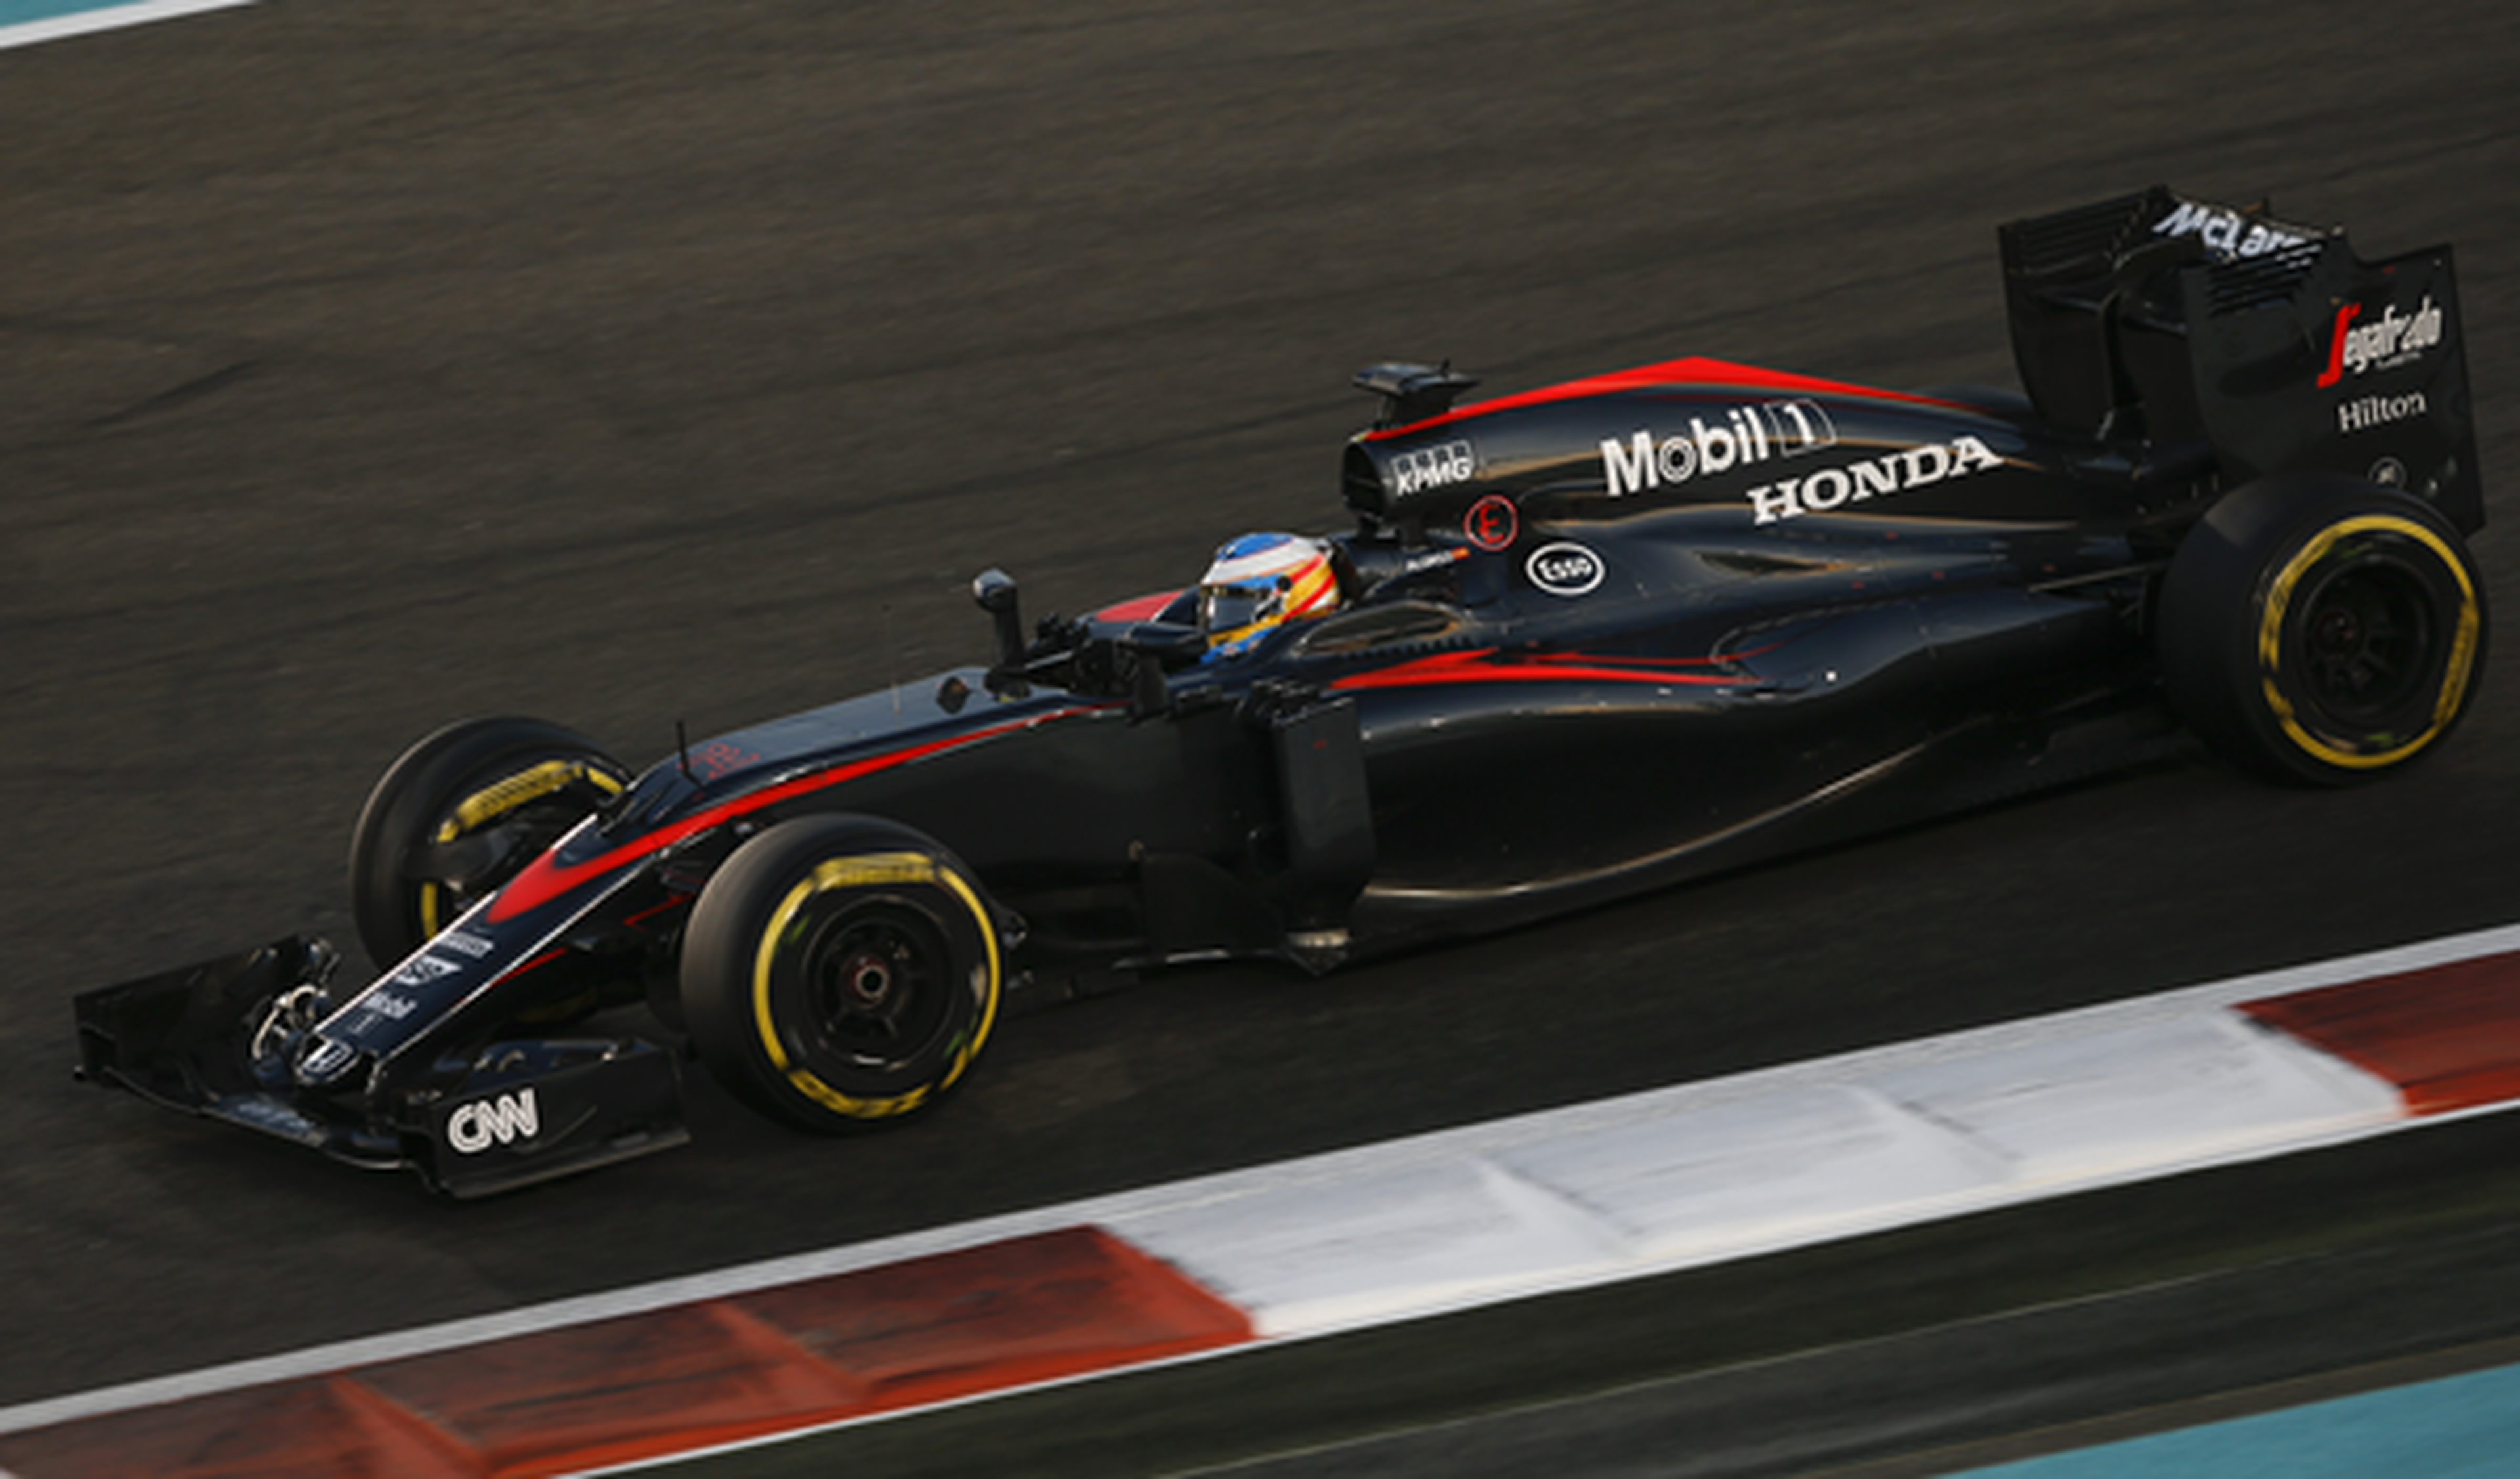 Alonso, sexto piloto de 2015 según los jefes de equipo